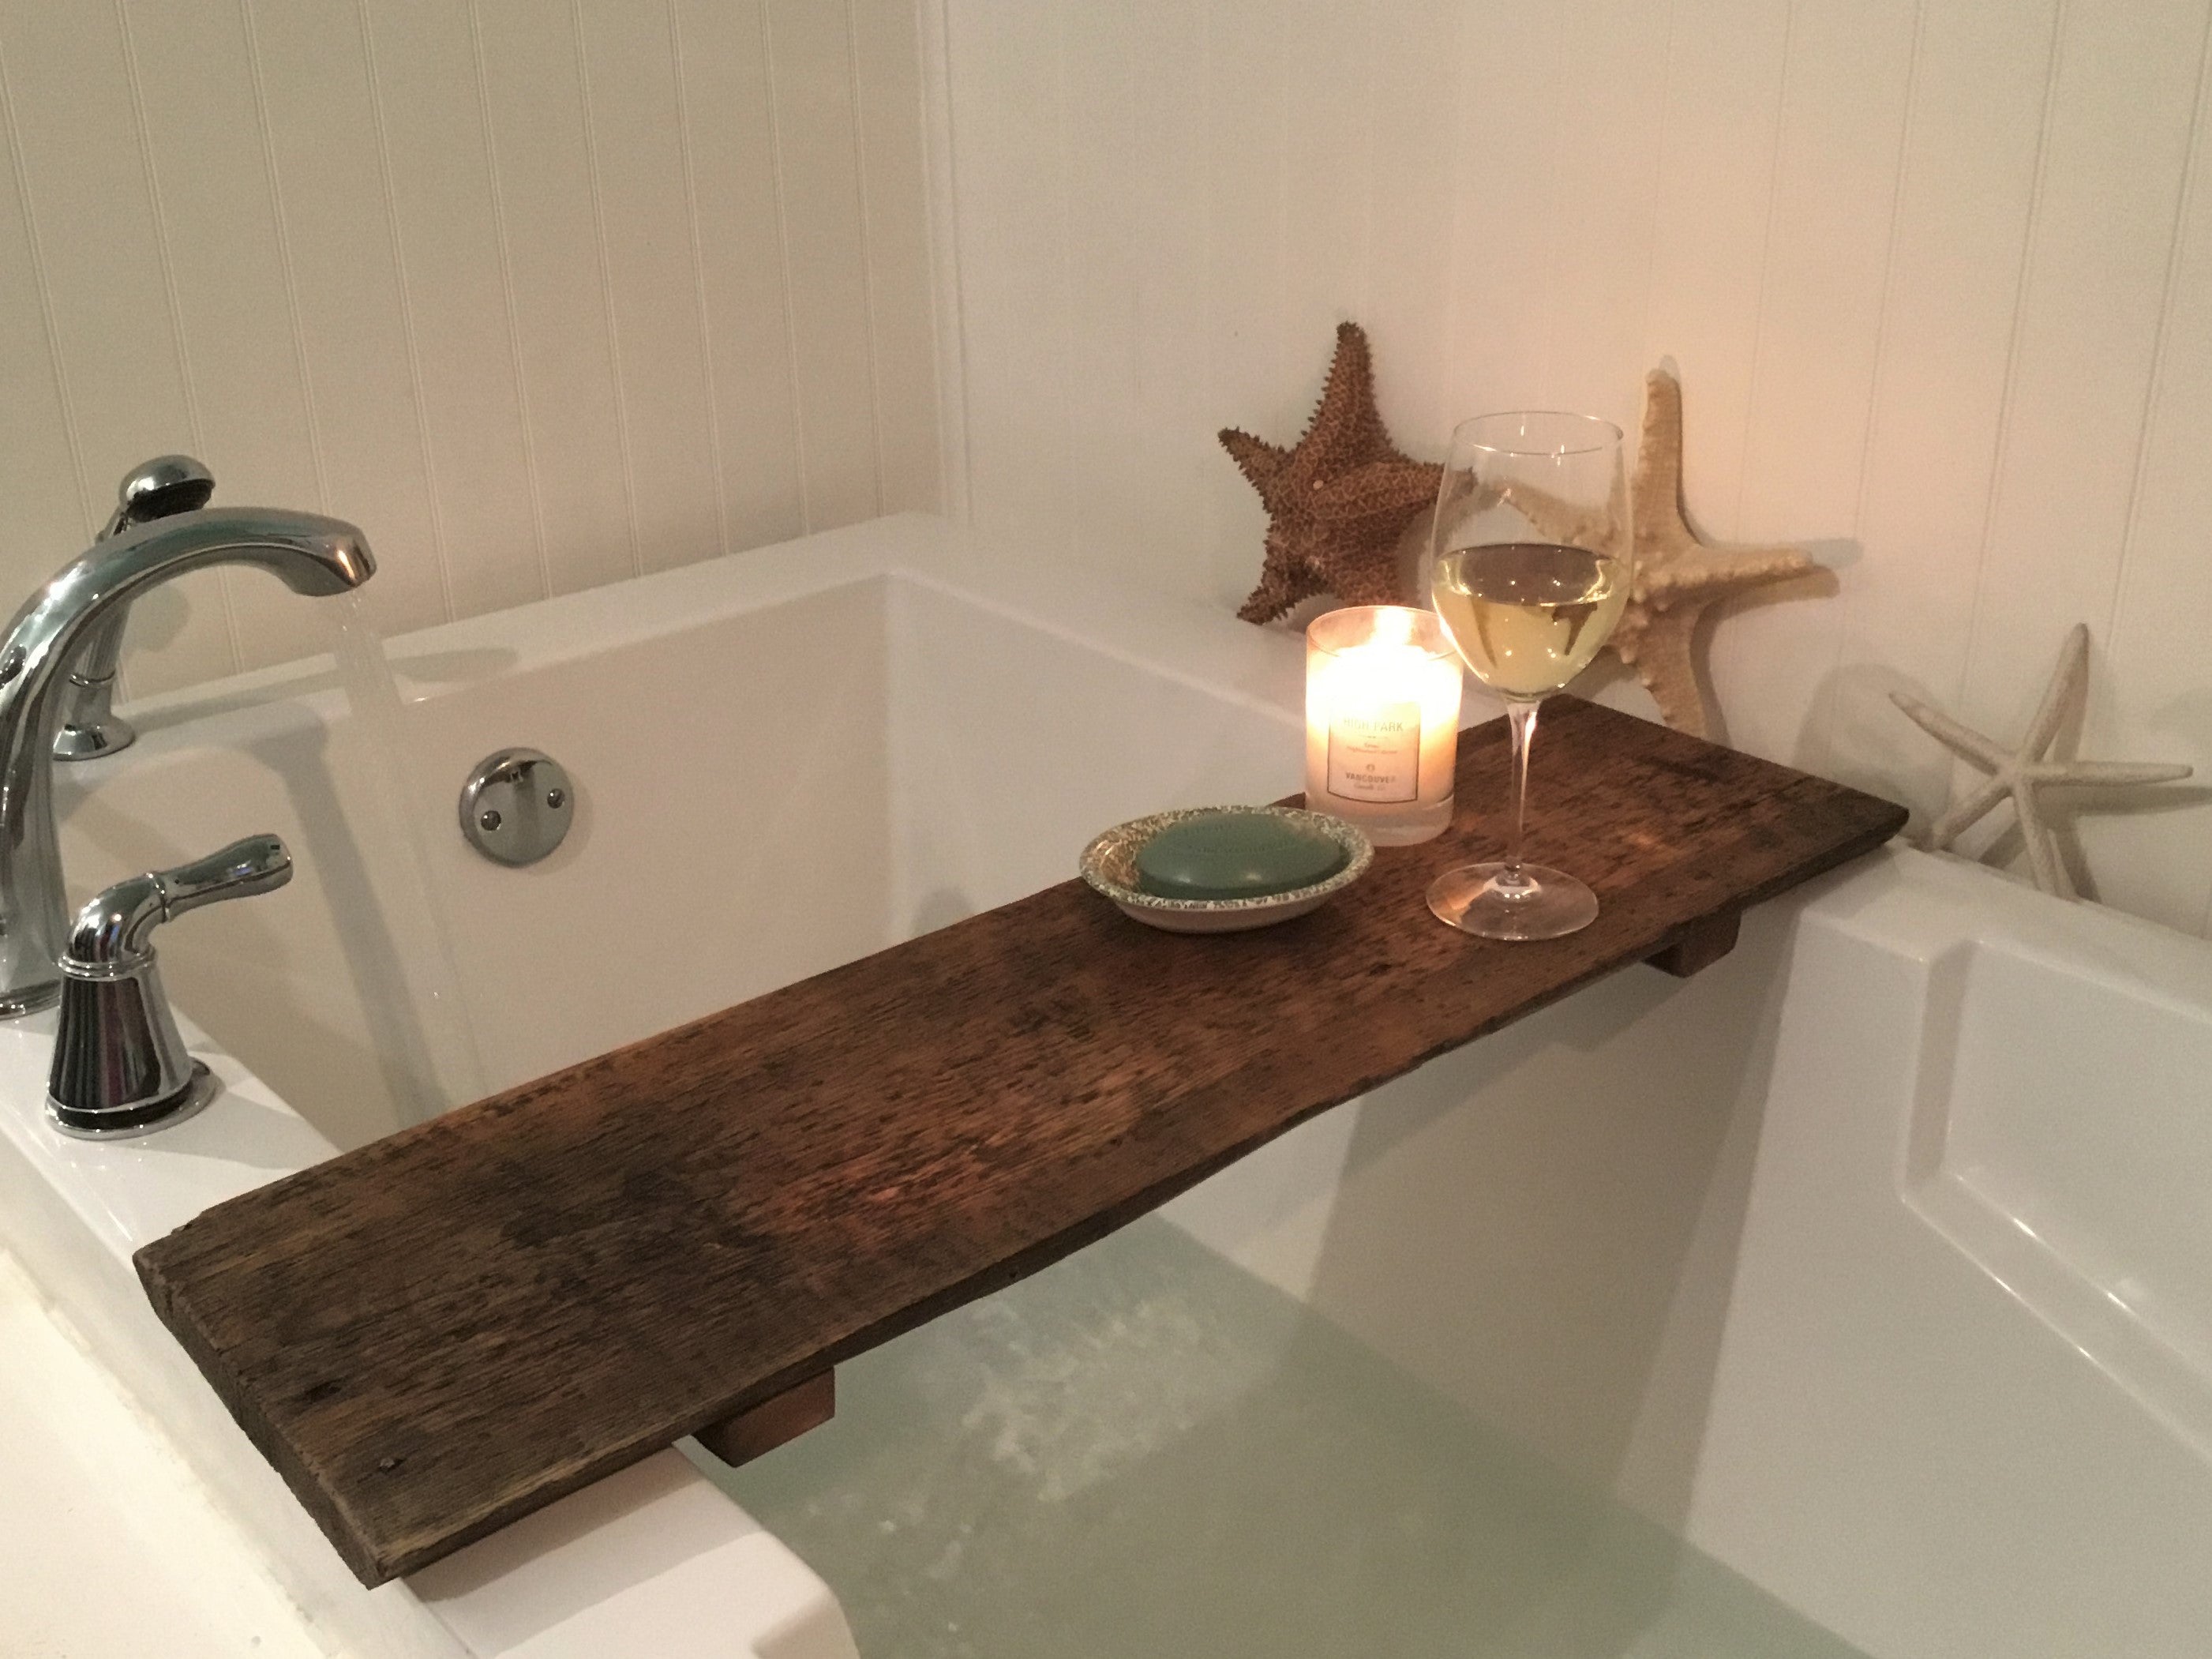 Bath Tray for Tub / Rustic Home Decor, Wood Bathtub Caddy Tray